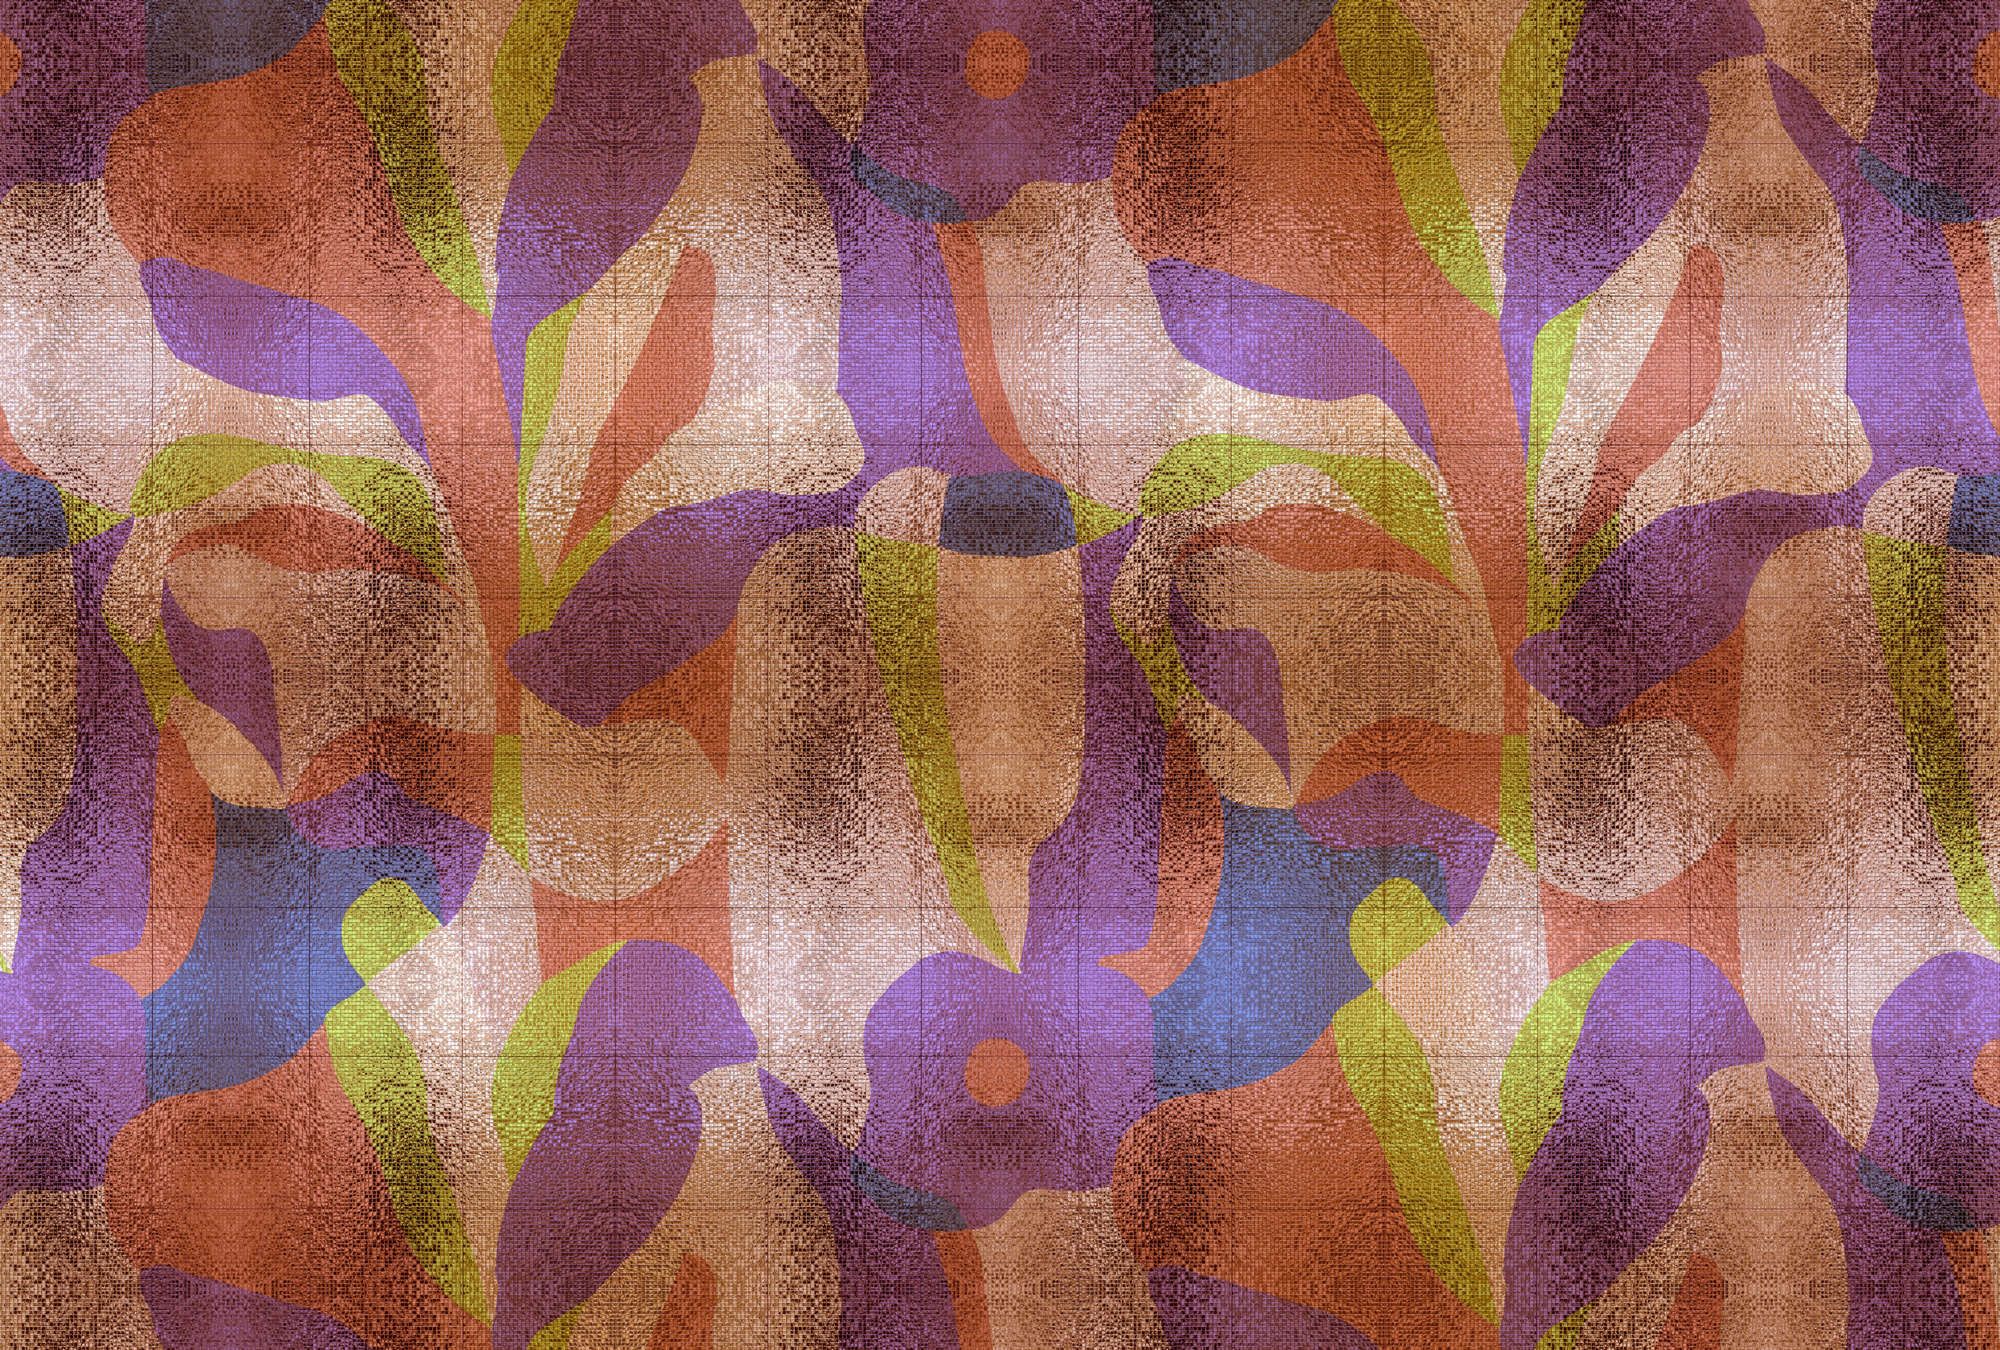             Fotomural »brillanaza« - Diseño gráfico de hojas de colores con estructura de mosaico - Tela no tejida mate y lisa
        